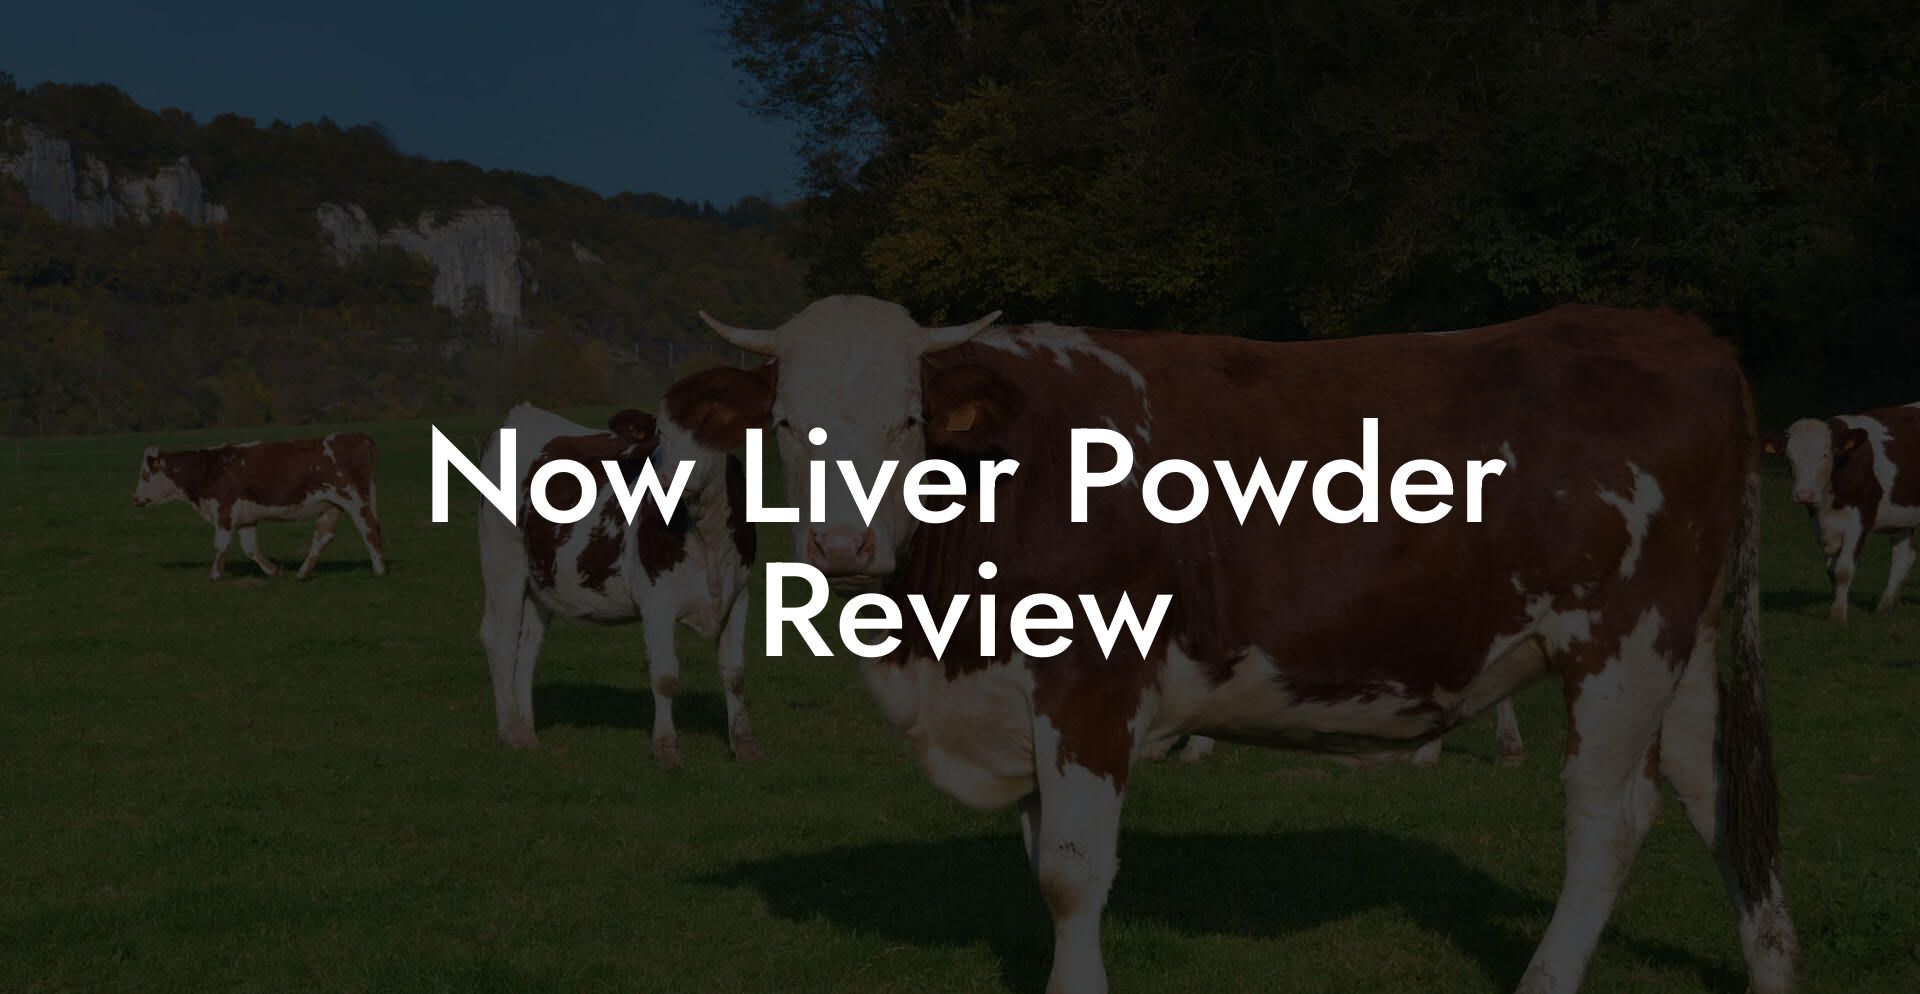 Now Liver Powder Review